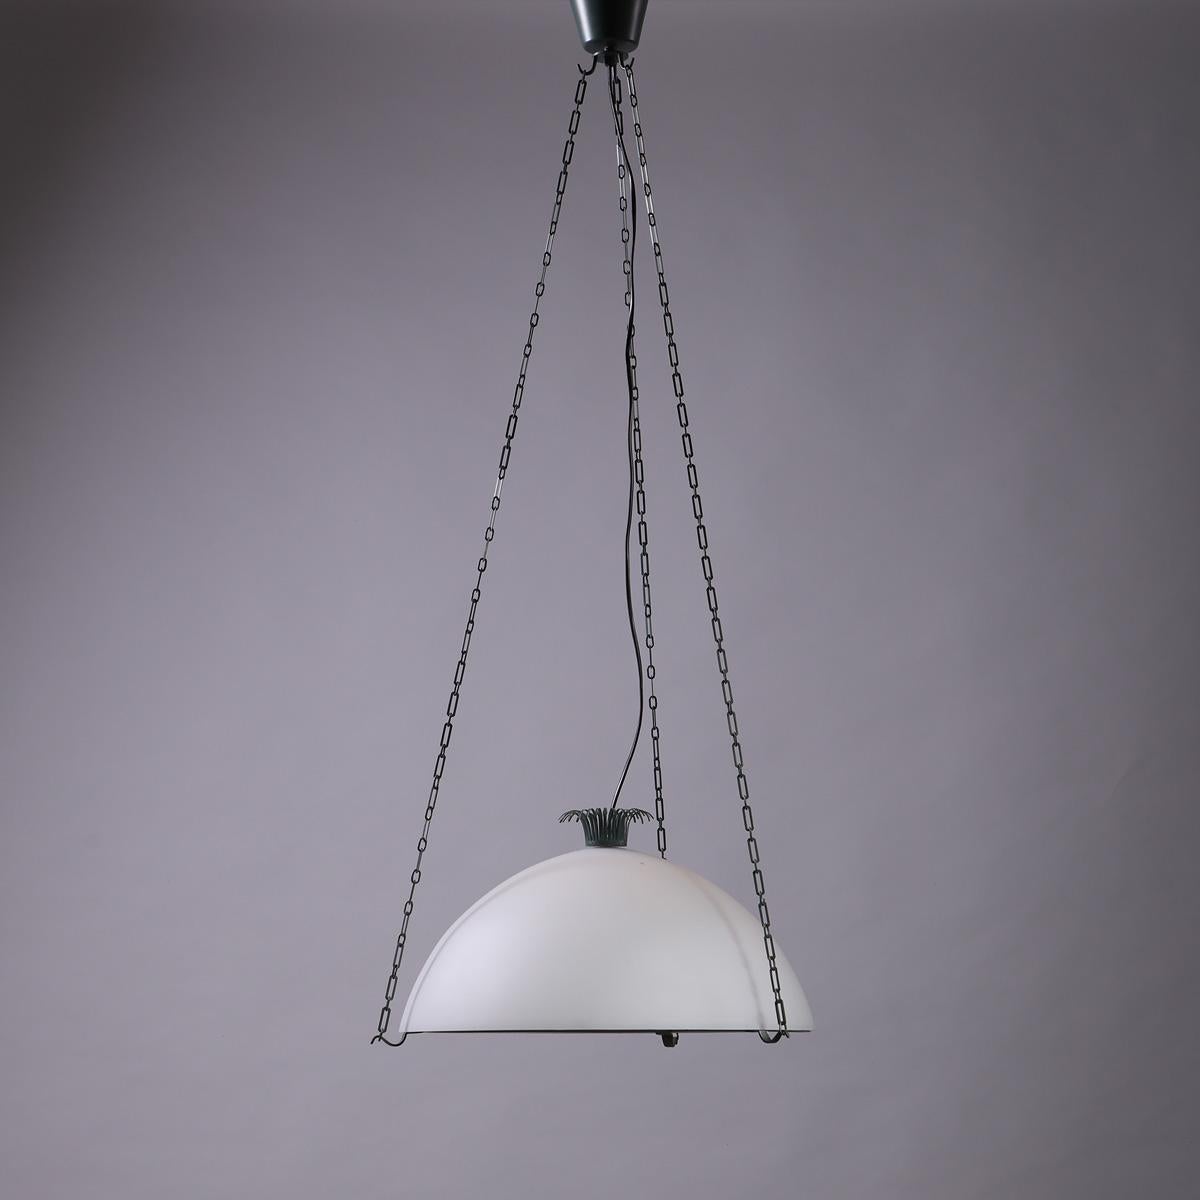 Seltene originale Deckenleuchte aus Glas und Stahl, Modell Parachute, entworfen von Erik Gunnar Asplund und hergestellt von Ateljé Lyktan in Schweden, 1959.

Diese außergewöhnliche Hängeleuchte, die nur selten auf den Markt kommt, wurde ursprünglich